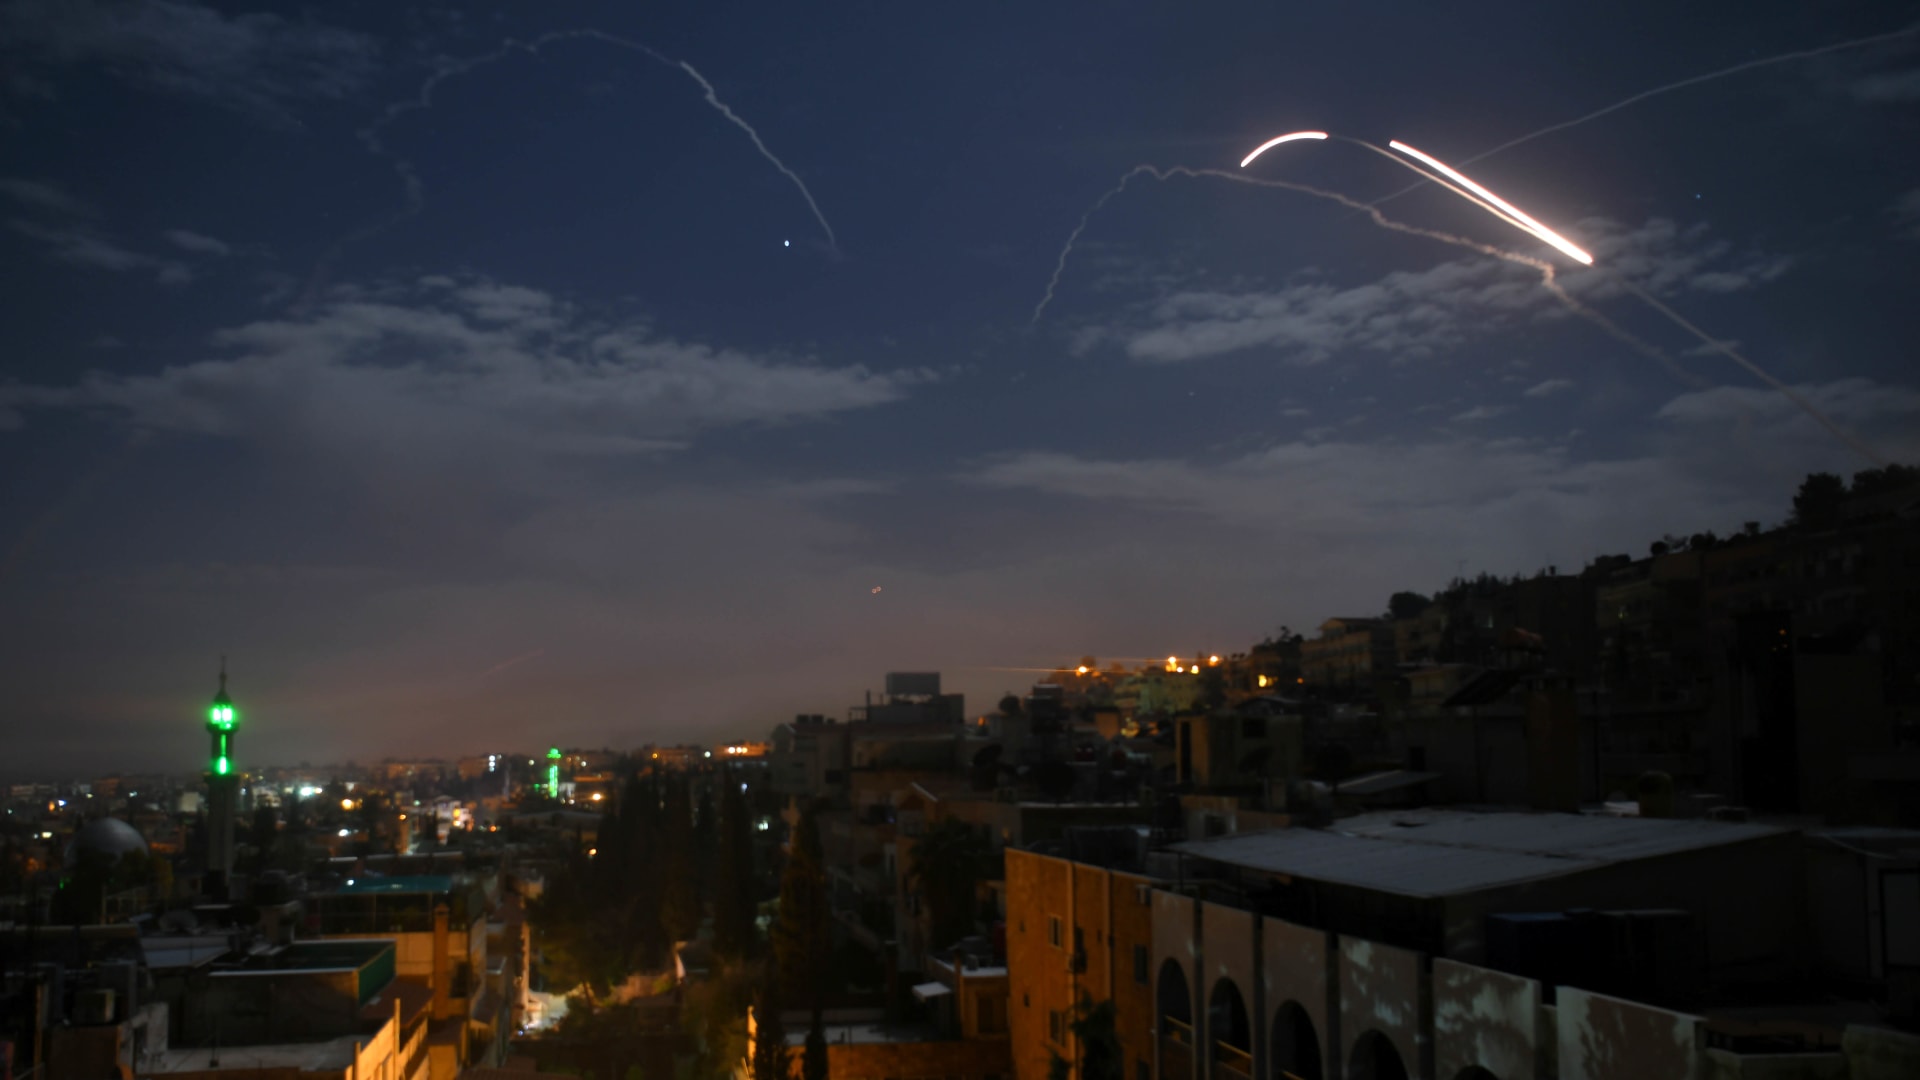  إسرائيل تعلن أهداف عسكرية سورية ضربتها غارات جوية جنوب البلاد